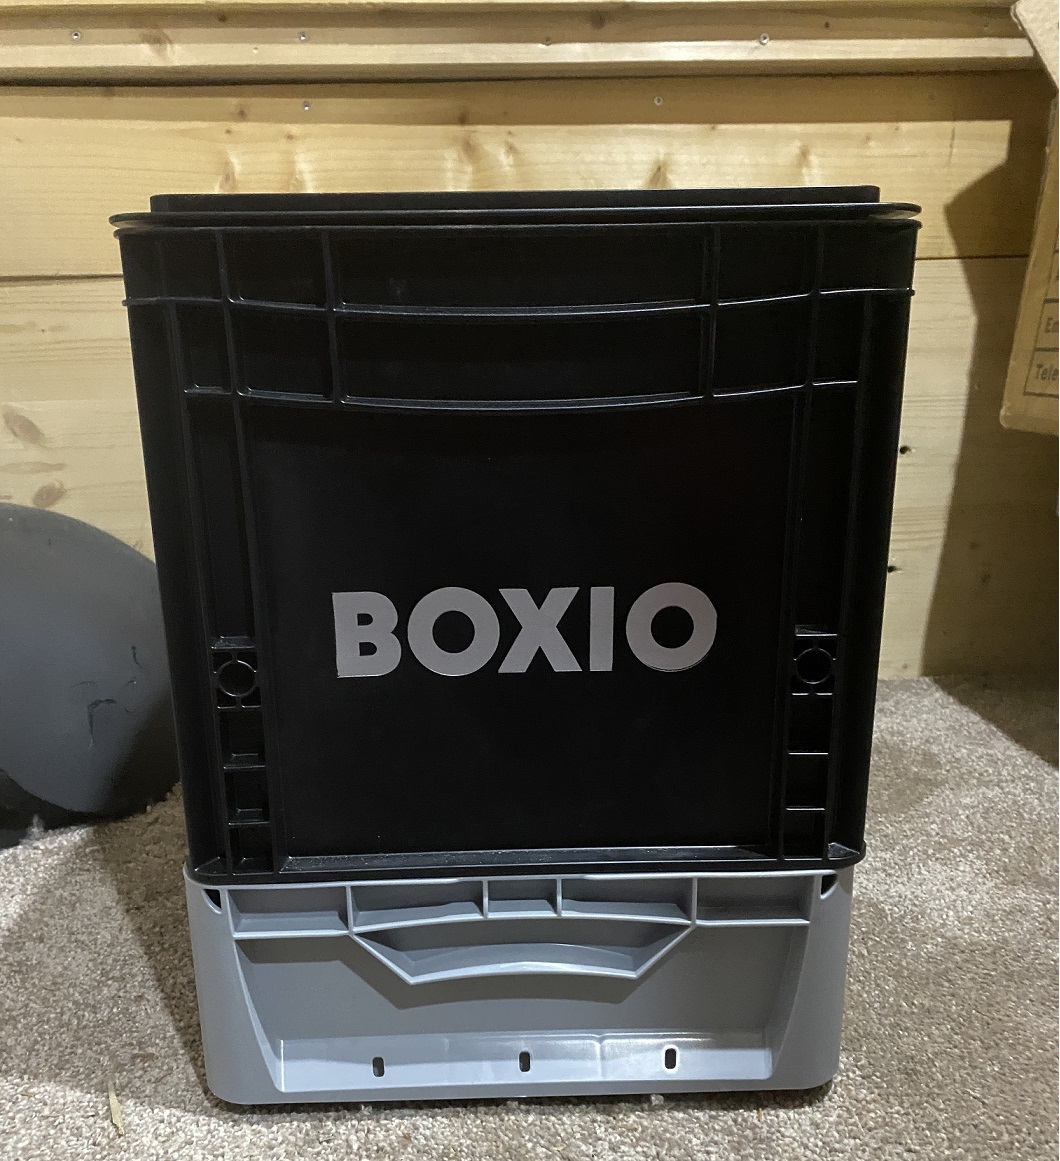 Trockentrenntoilette BOXIO Erfahrungsbericht